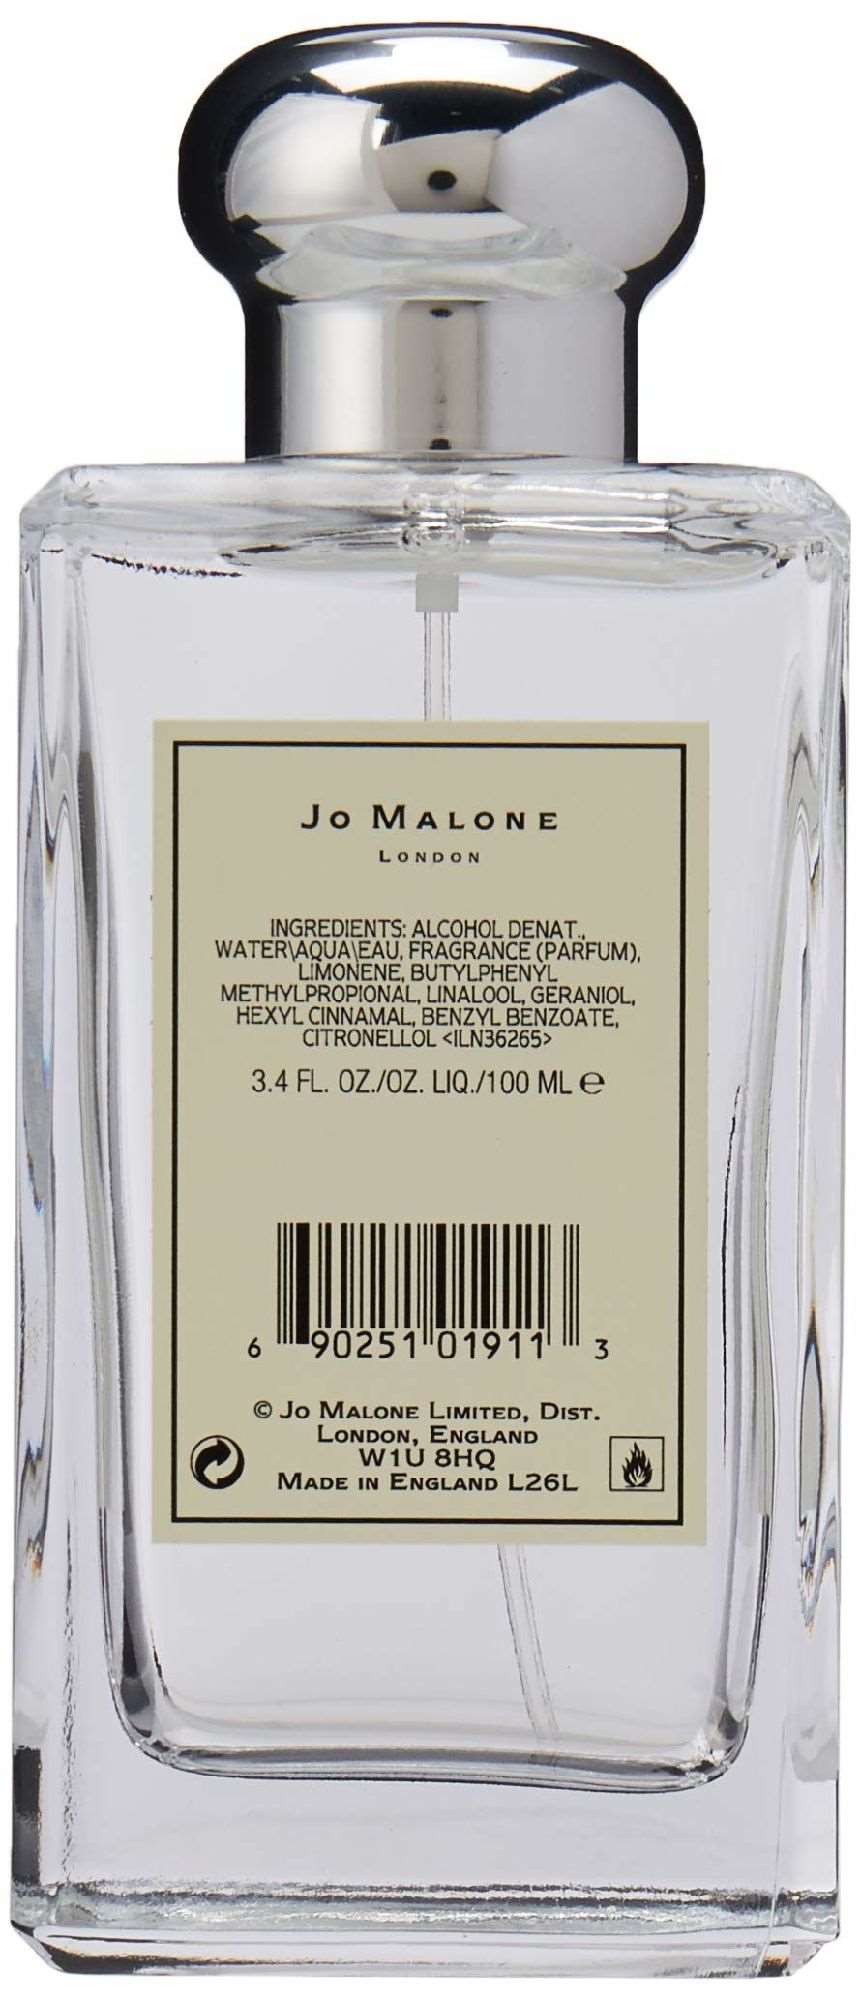 JO MALONE ENGLISH PEAR & FREESIA by Jo Malone COLOGNE SPRAY 3.4 OZ 3P's Inclusive Beauty